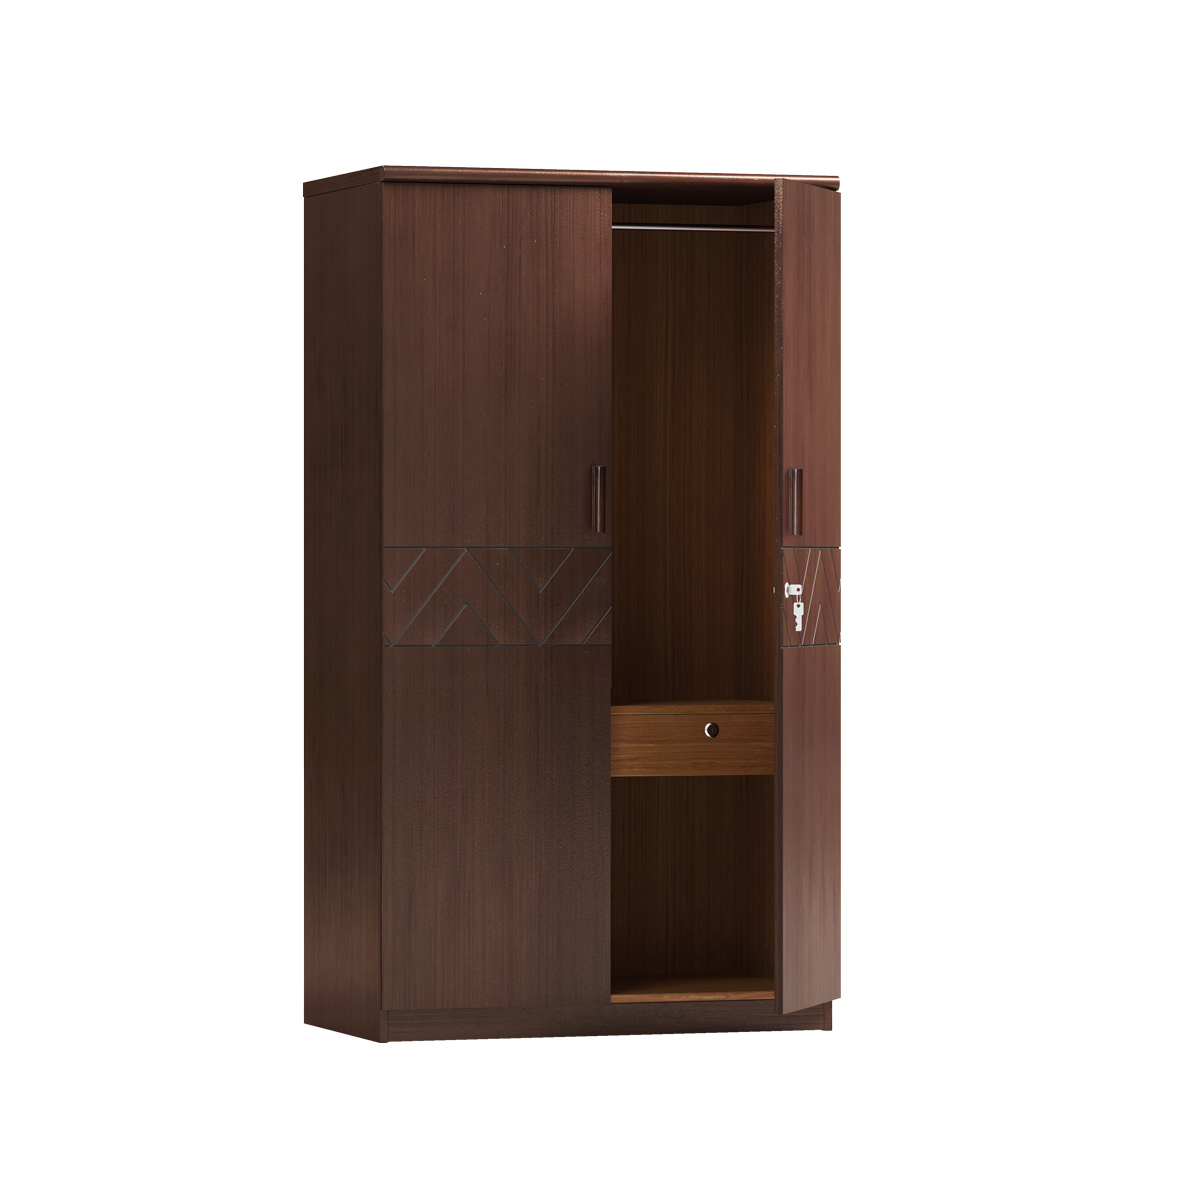 Wooden almirah/Cupboard I CBH-357 (2 DOOR)